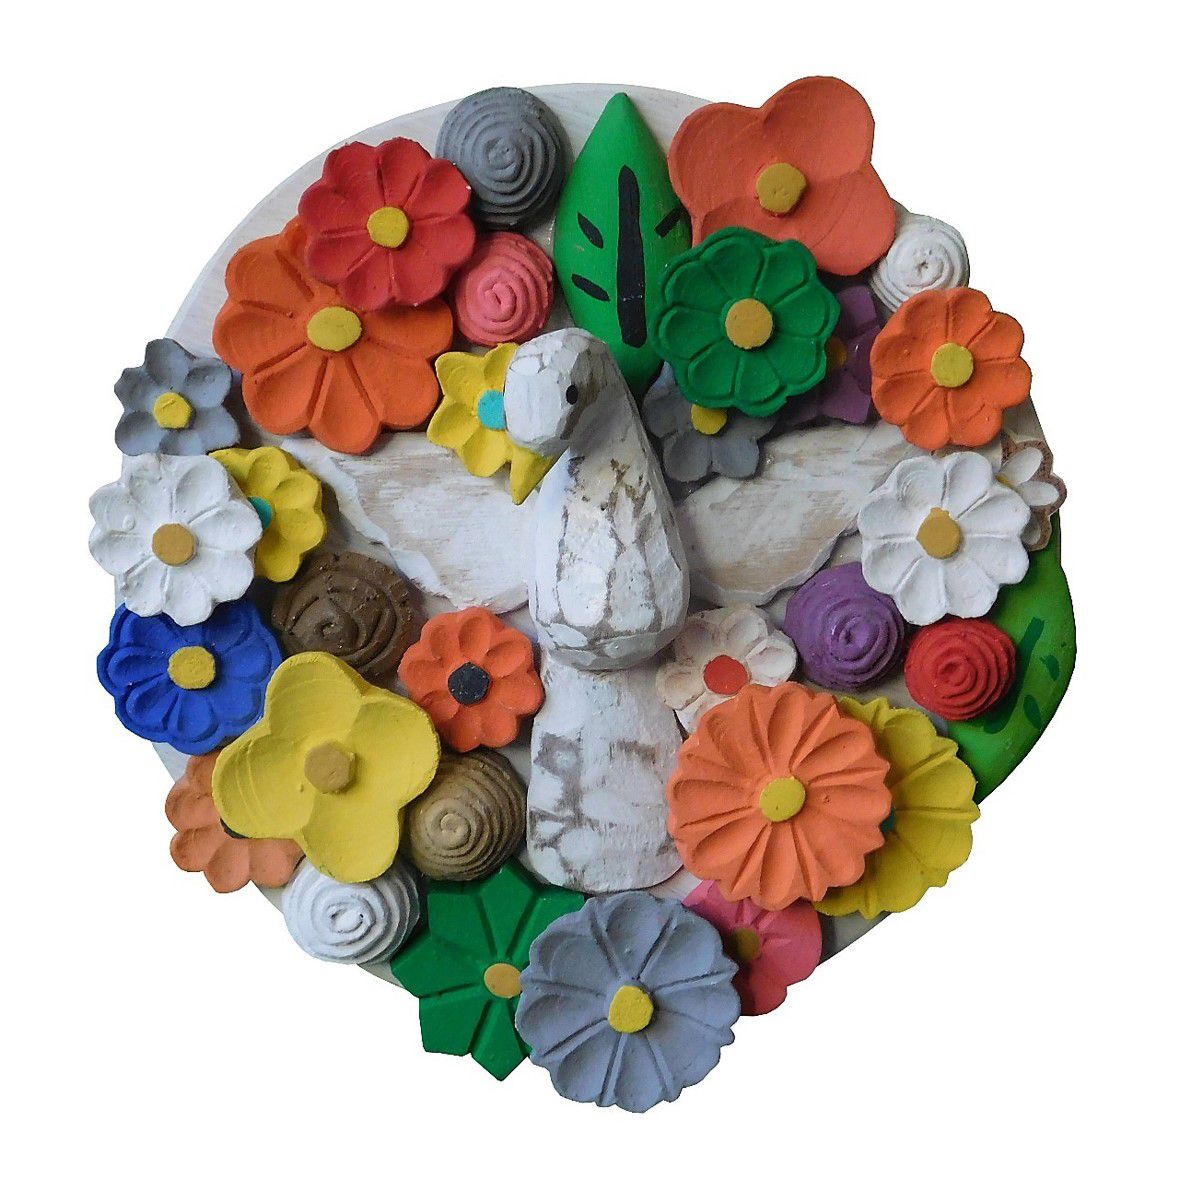 Quadro Artesanal Mandala Pequena de Parede com Flores e Divino Espirito Santo em Madeira 21 cm (TN959)